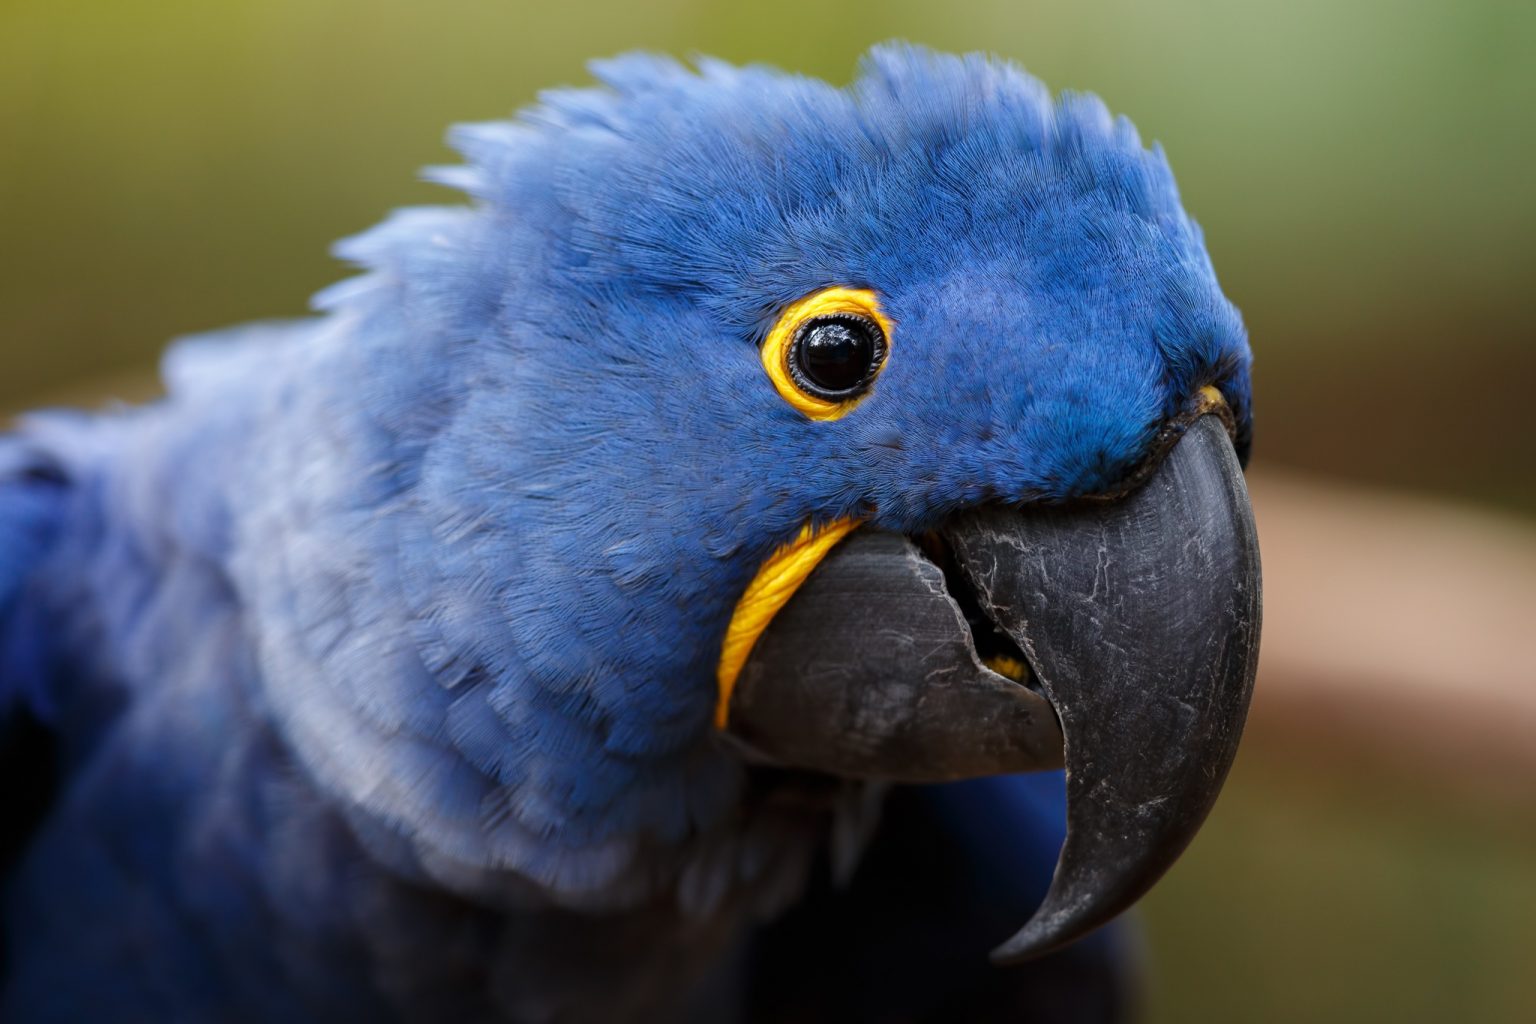 Tổng hợp hình ảnh chim Vẹt đẹp nhất - [Kích thước hình ảnh: 1536x1024 px]